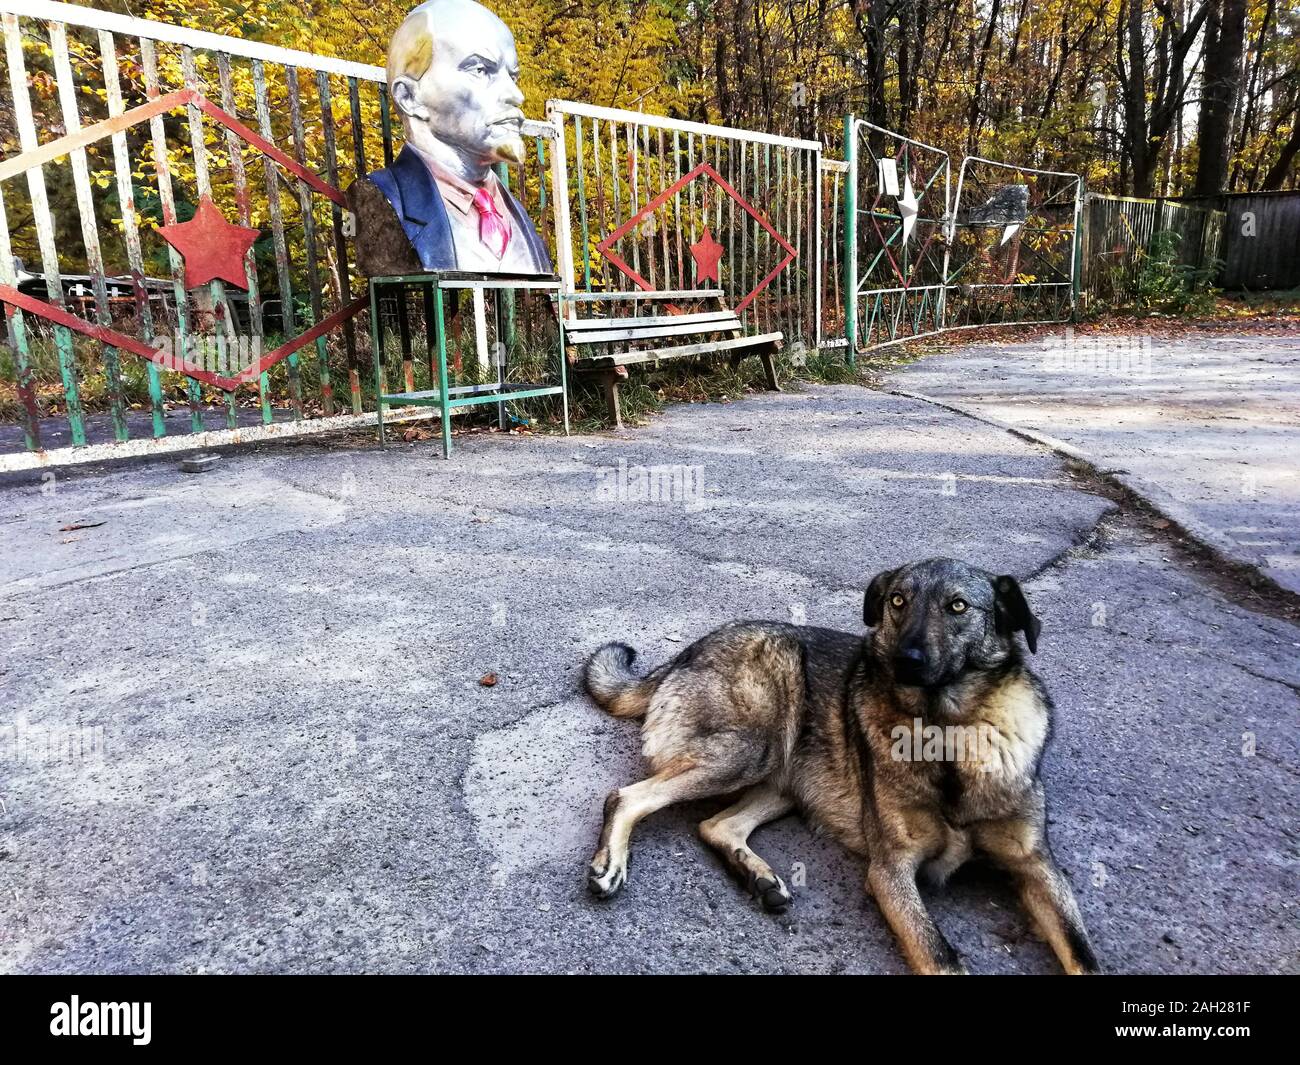 Pripyat, Ucraina - 21 ottobre 2019: Un cane randagio di fronte a un Lenin vicino Pripyat, Ucraina, sito del desaster nucleare di Chernobyl 1986. Foto Stock